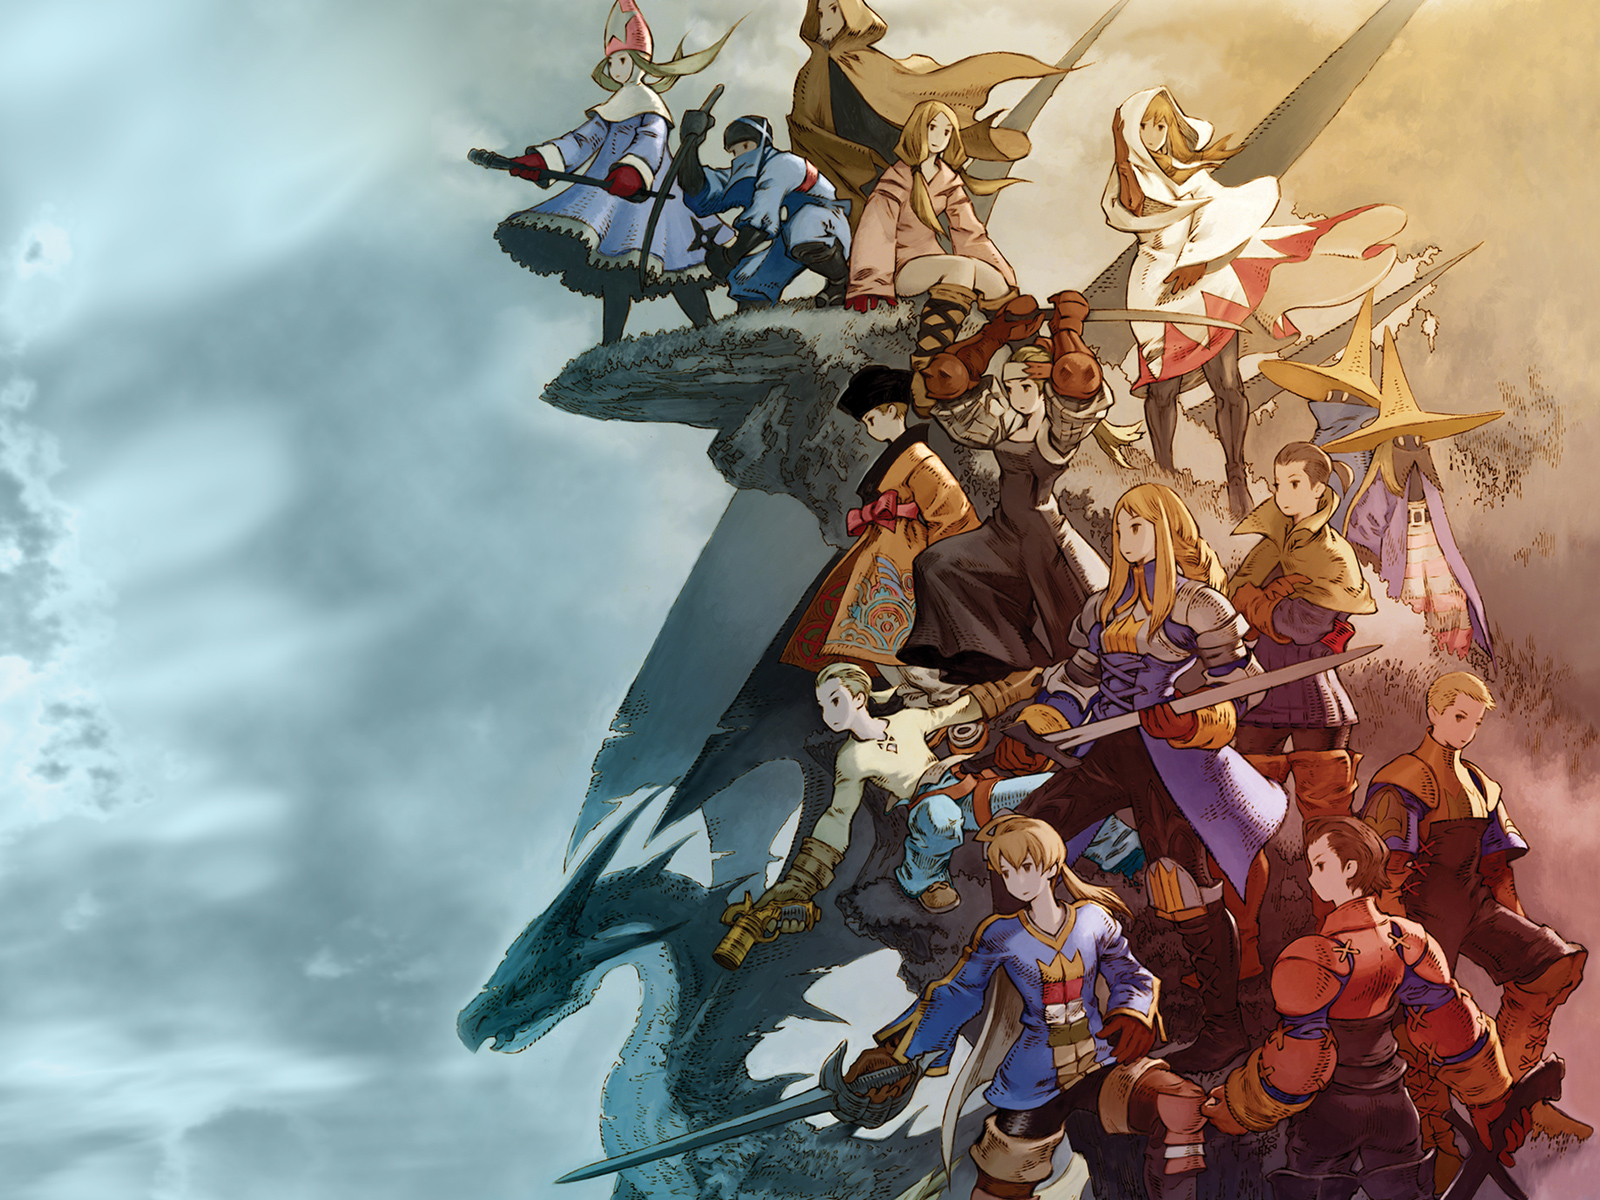 Final Fantasy Tactics Desktop Wallpapers